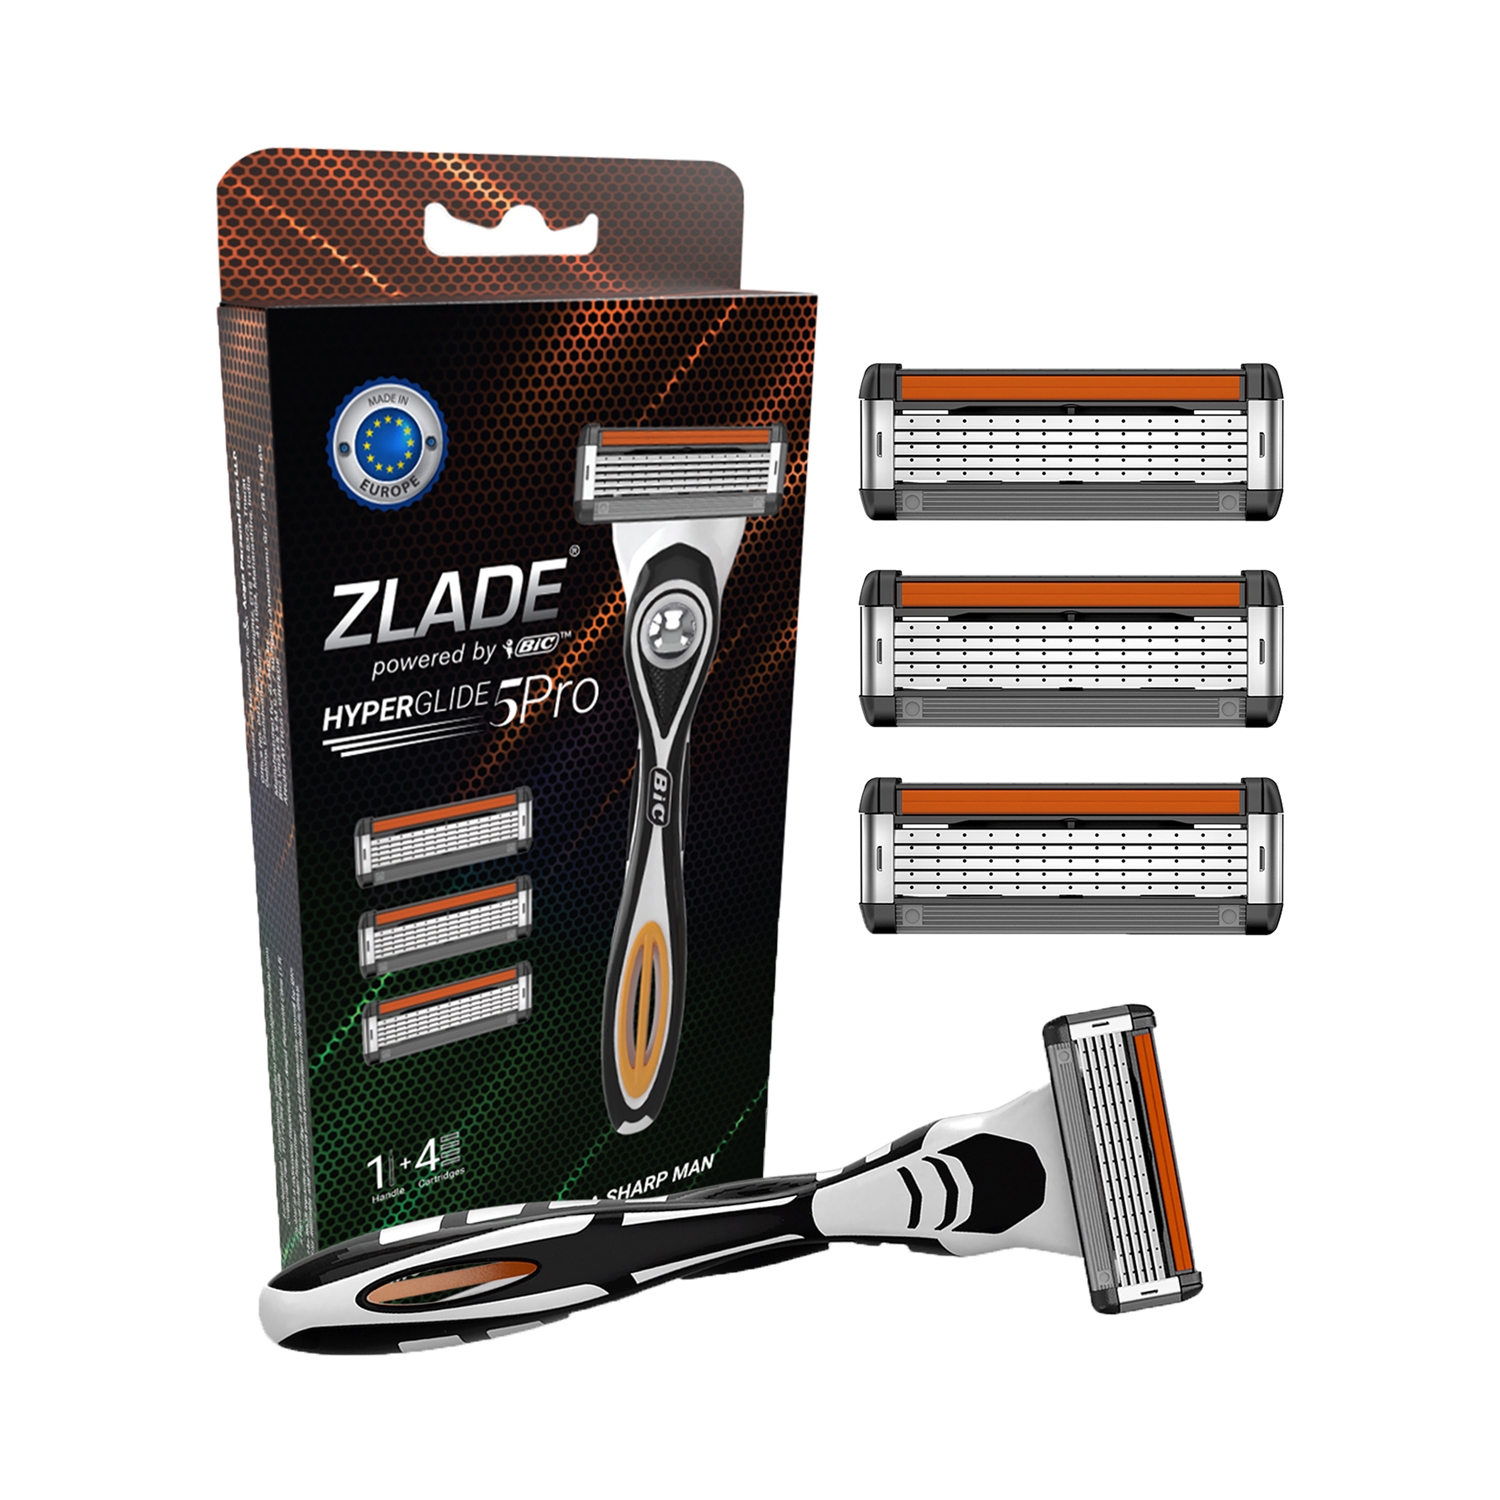 Zlade Hyperglide 5 Pro Shaving System For Men - (5Pcs) (1 Razor Handle + 4 Cartridges)